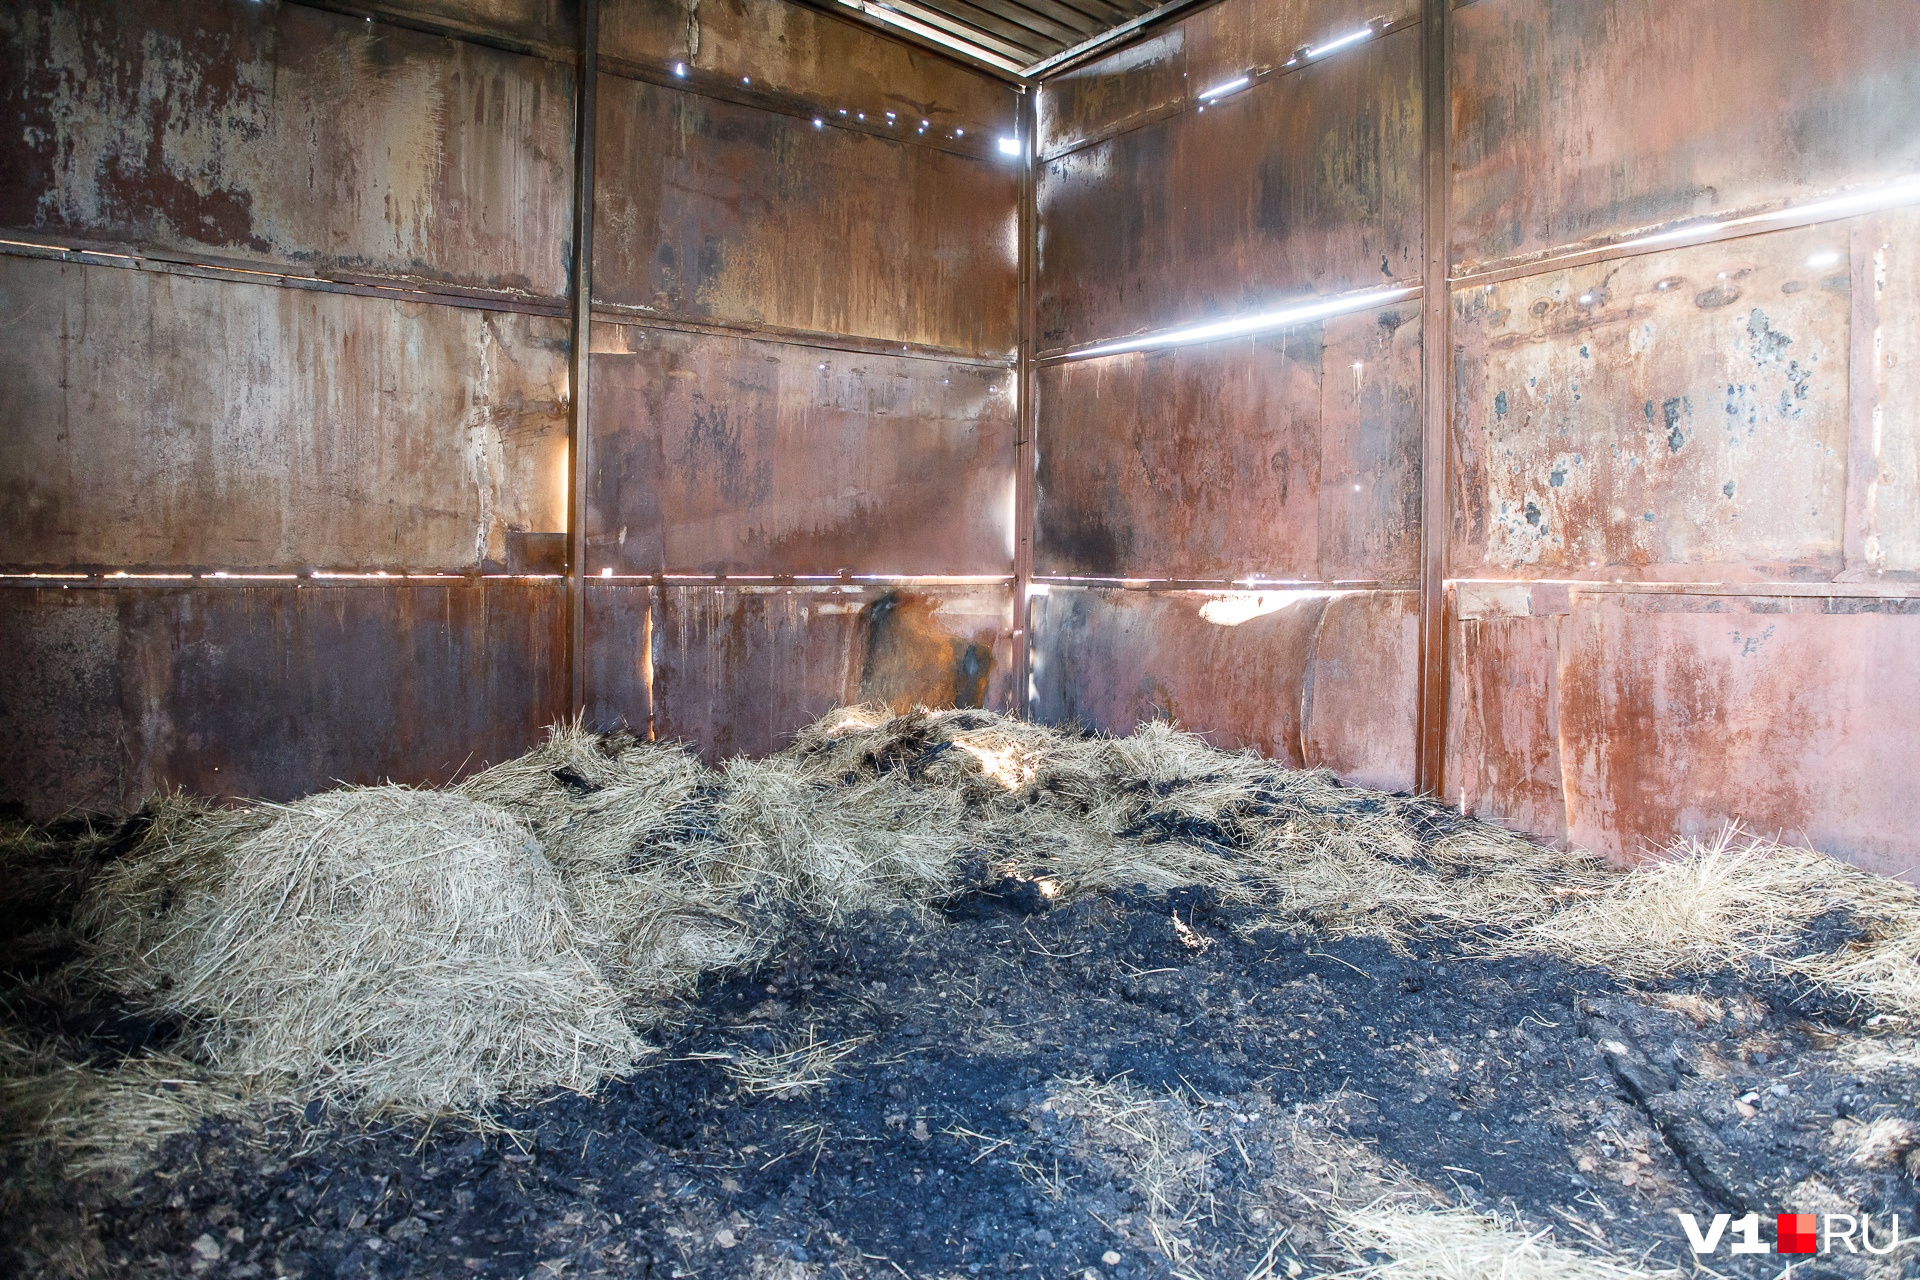 Горы строительного мусора и сгоревшее сено — все, что осталось от конюшни